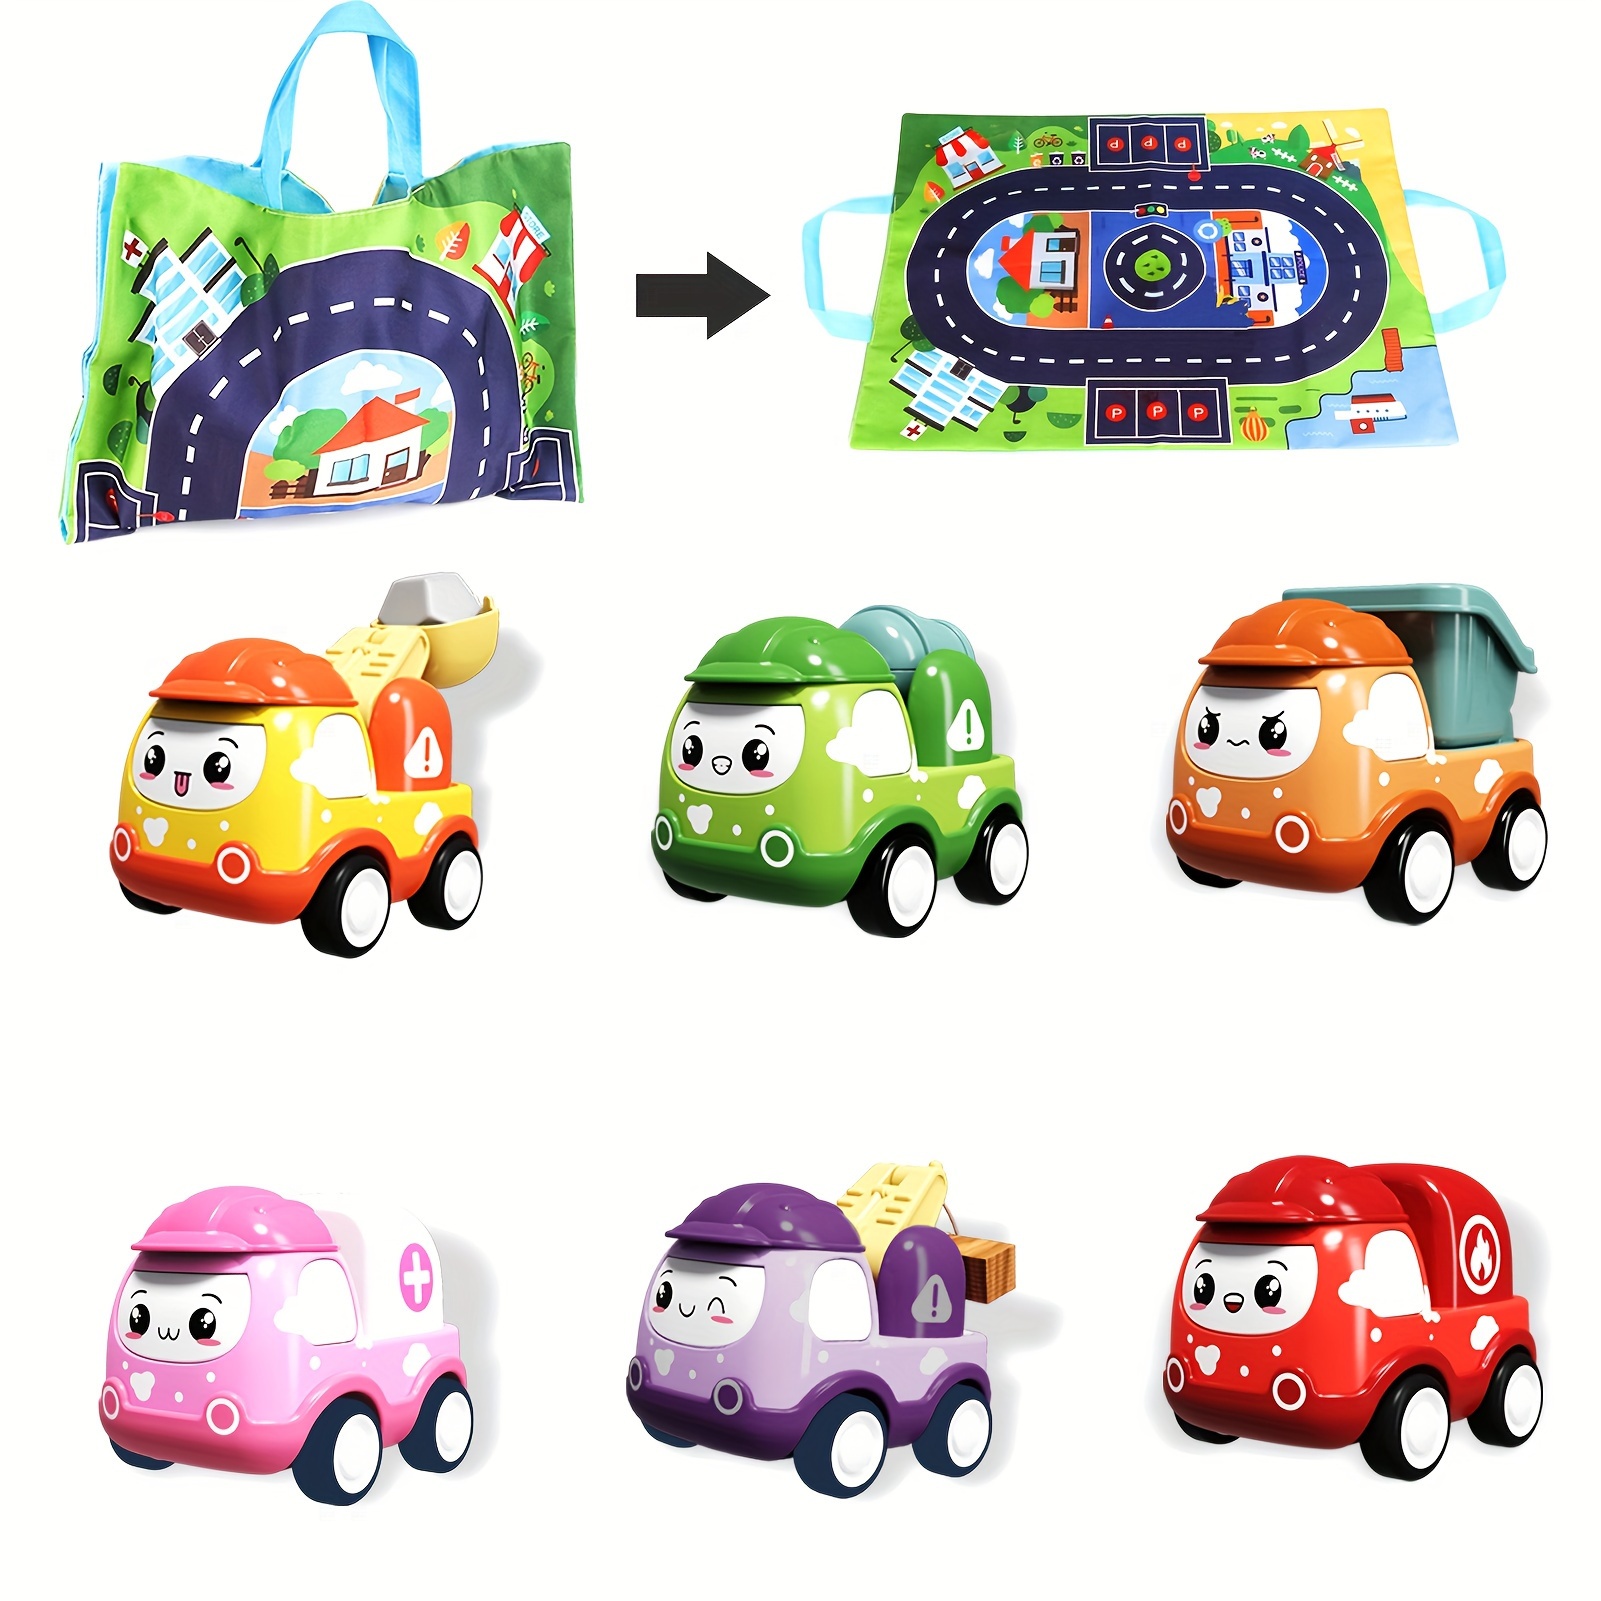 zufällige Farbe] Baby-autospielzeug Für 6 Bis 12 Monate, Weiche Gummi-push -and-go-fahrzeuge Für Kleinkinder, Kleinkind-rassel-roll-auto,  Reibungsbetriebener Lkw-spielzeug, Vorschul-lerngeschenk, Kaufen Sie Jetzt  Für Zeitlich Begrenzte Angebote Ein